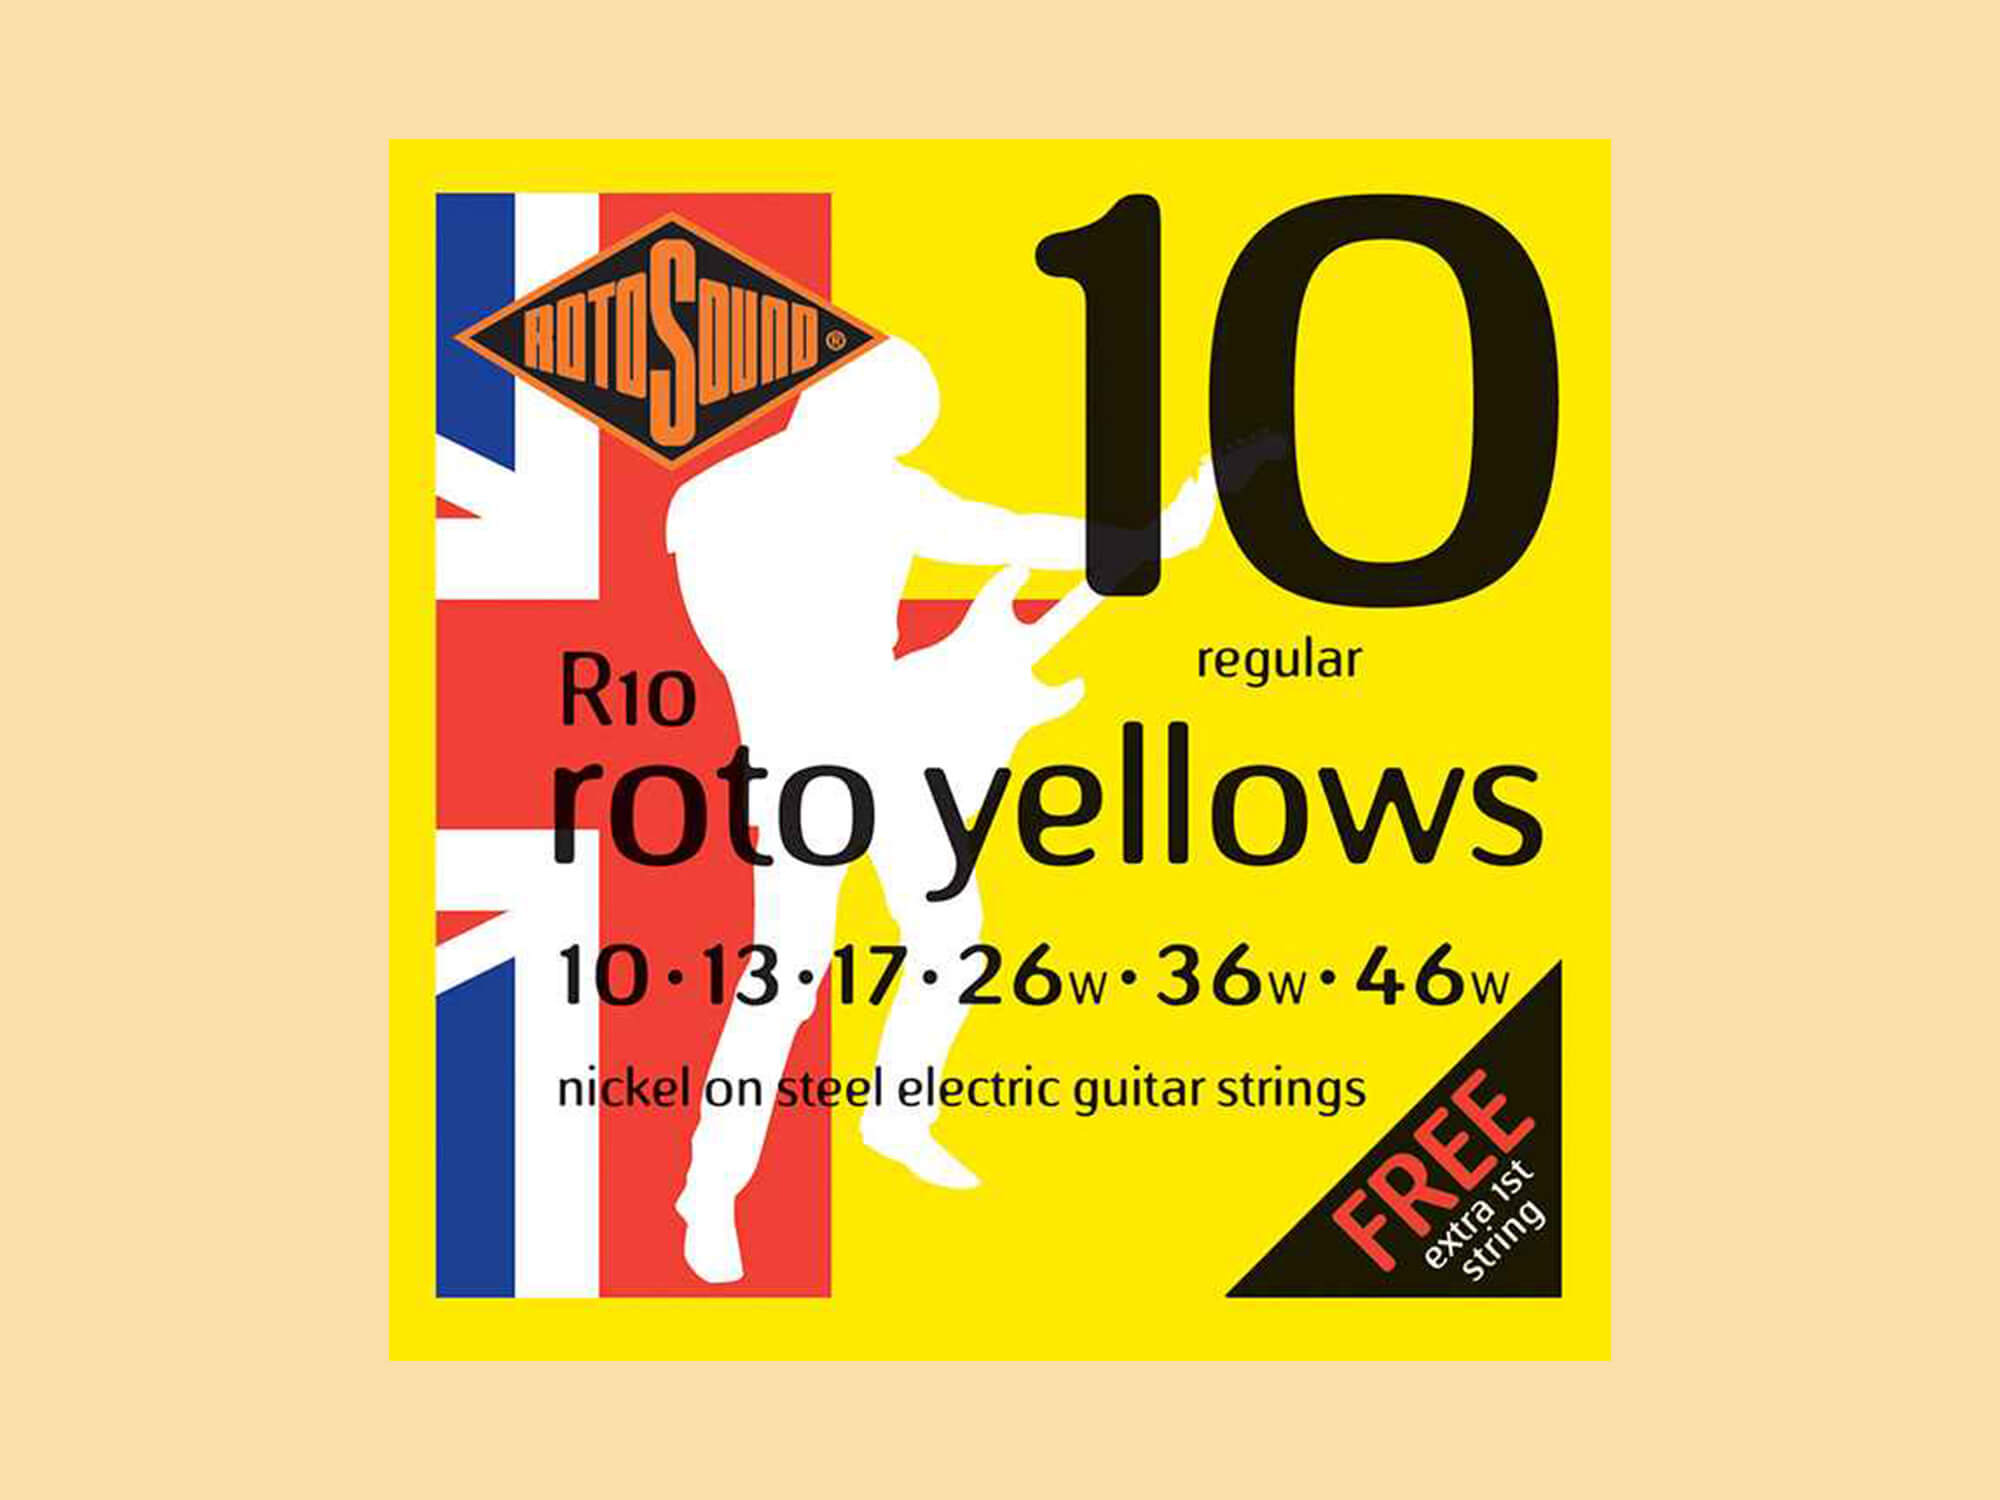 Rotosound Roto Yellows